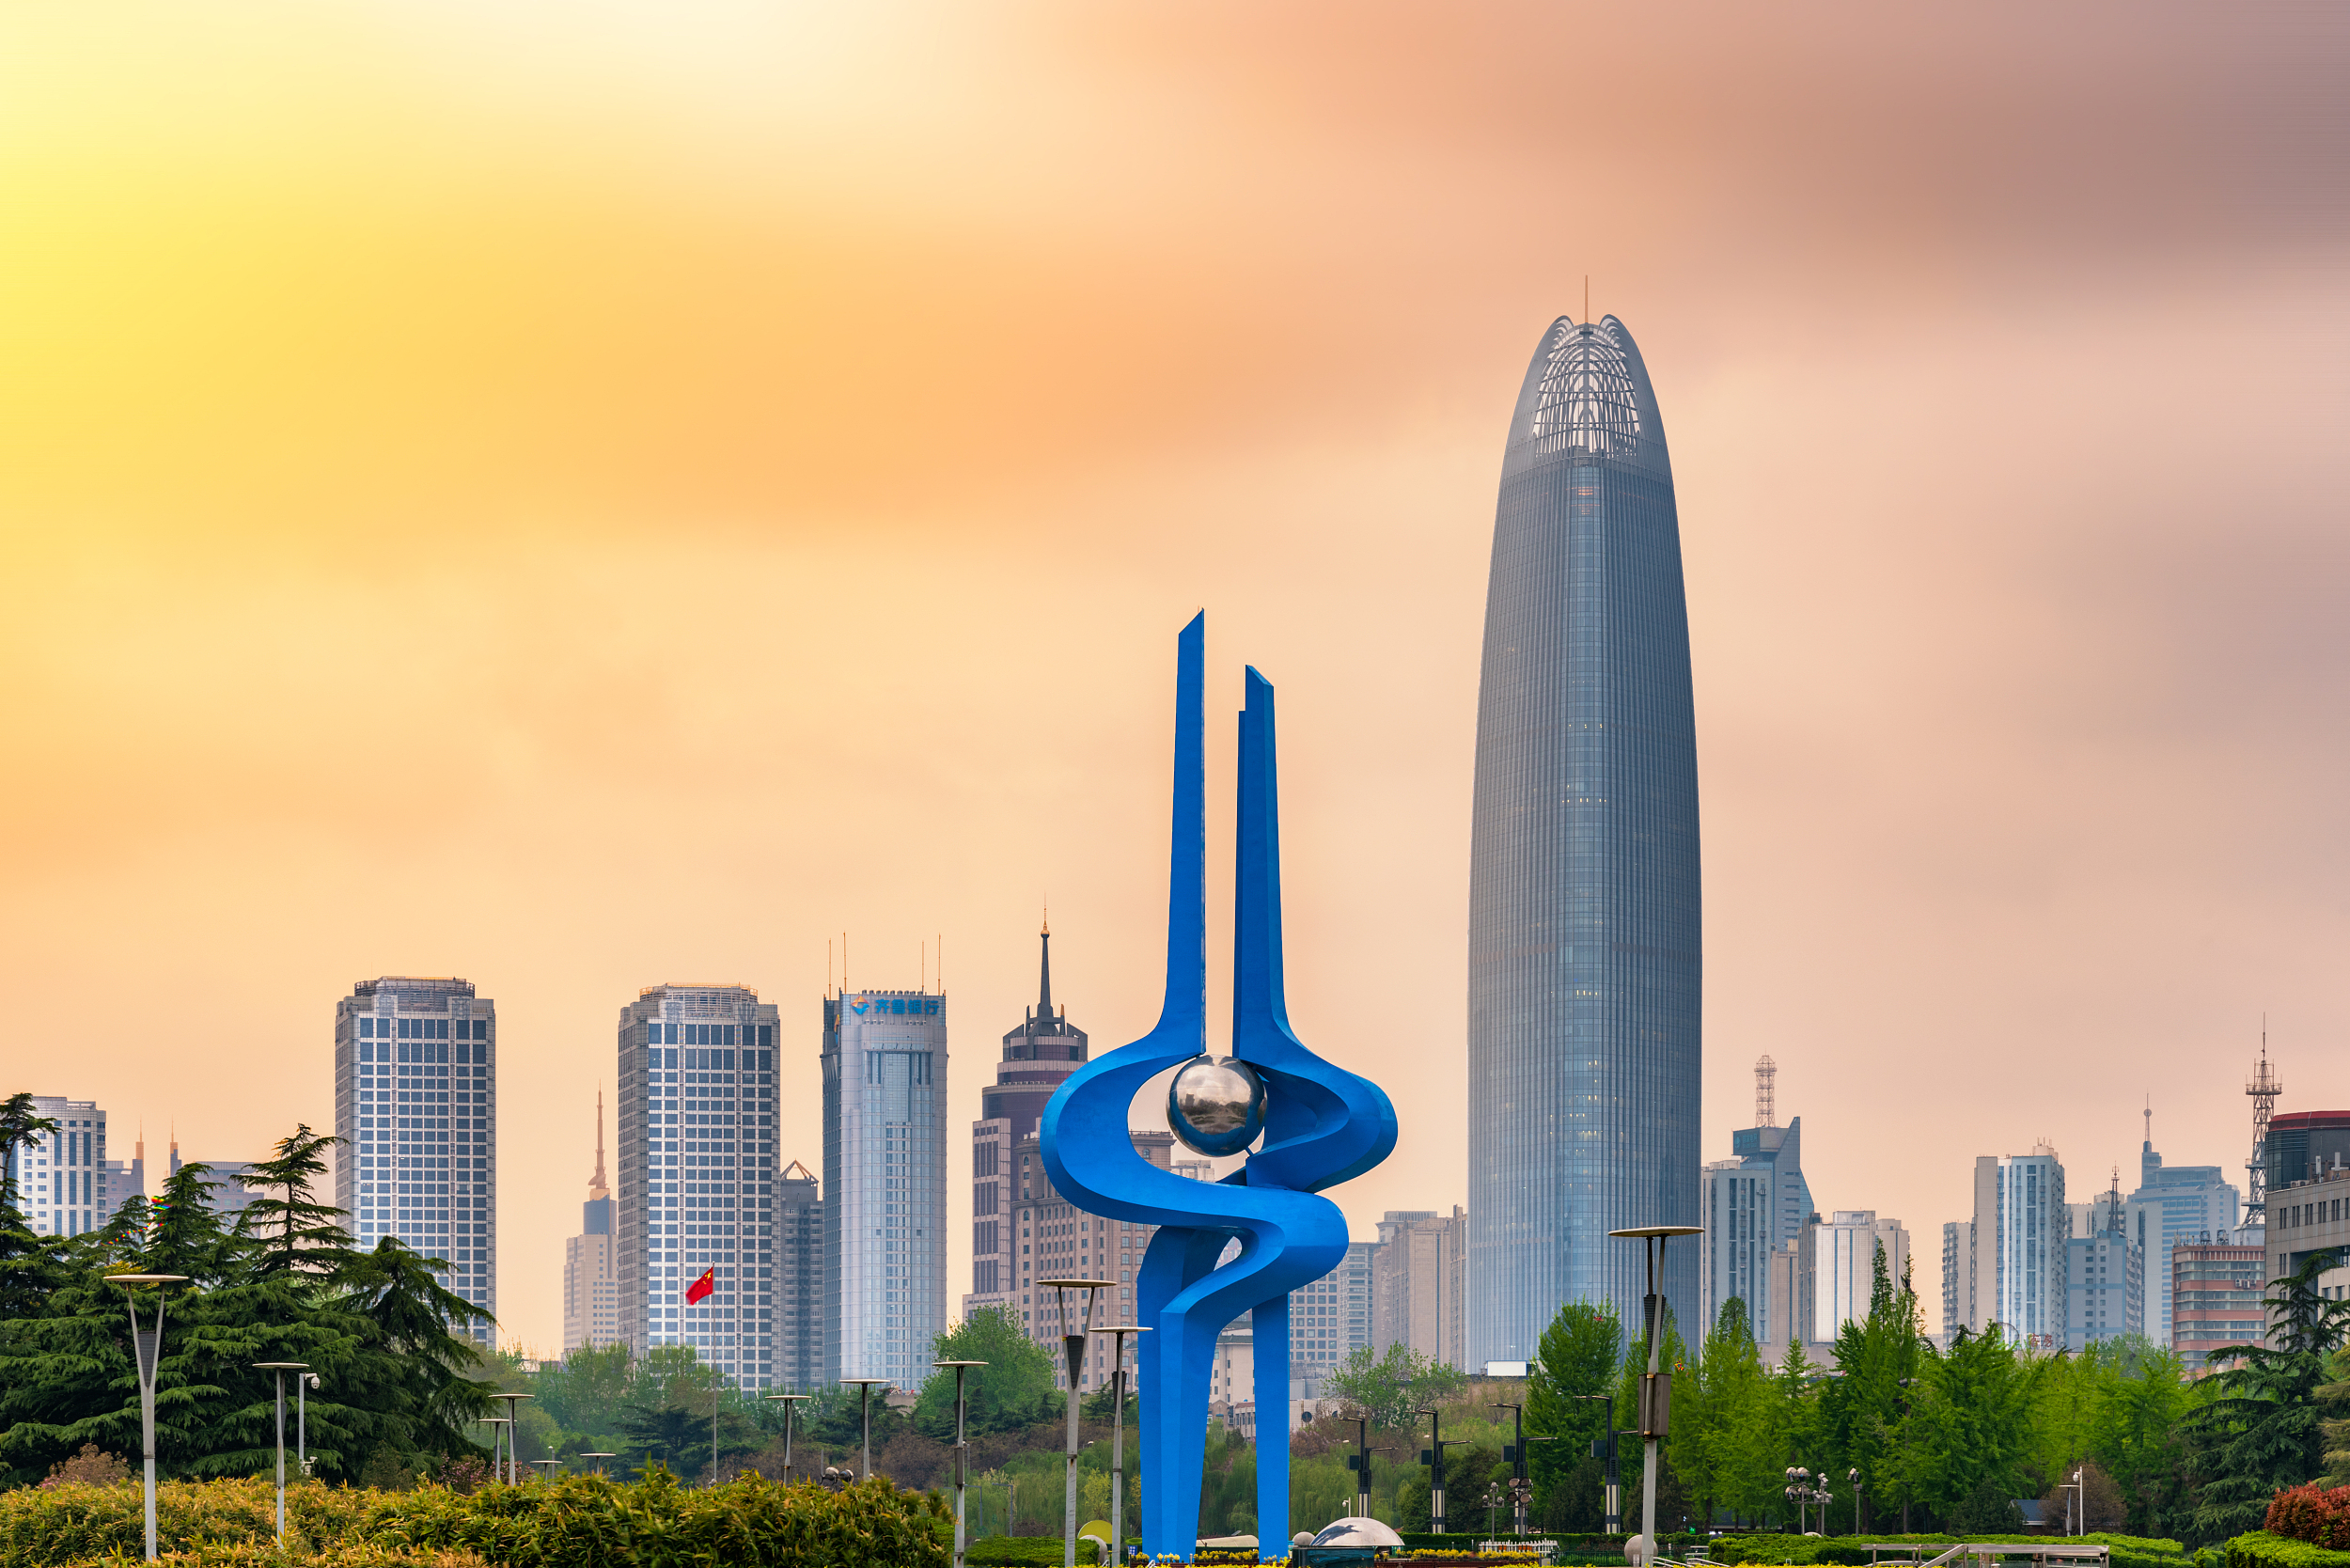 超,特大城市名单排行扩充至16个:杭州超南京,济南晋级